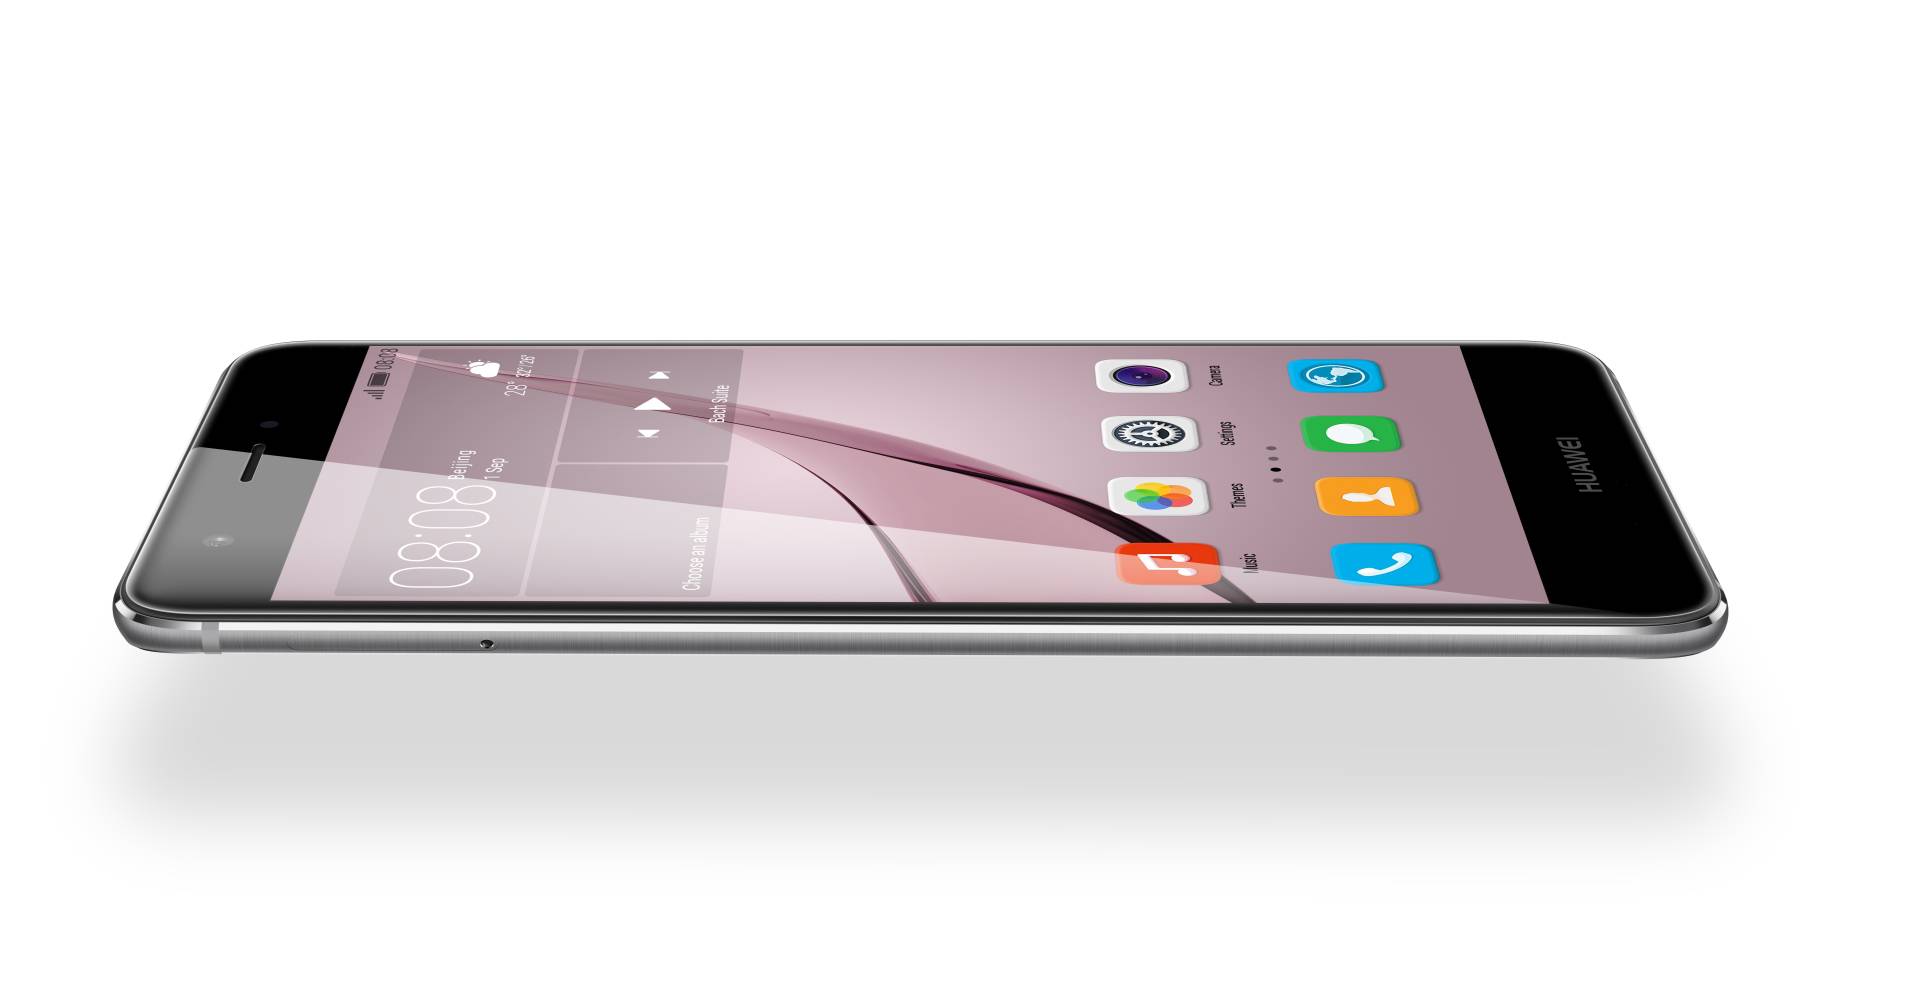 Nova je novi Huaweijev mobitel koji je stigao i u Hrvatsku